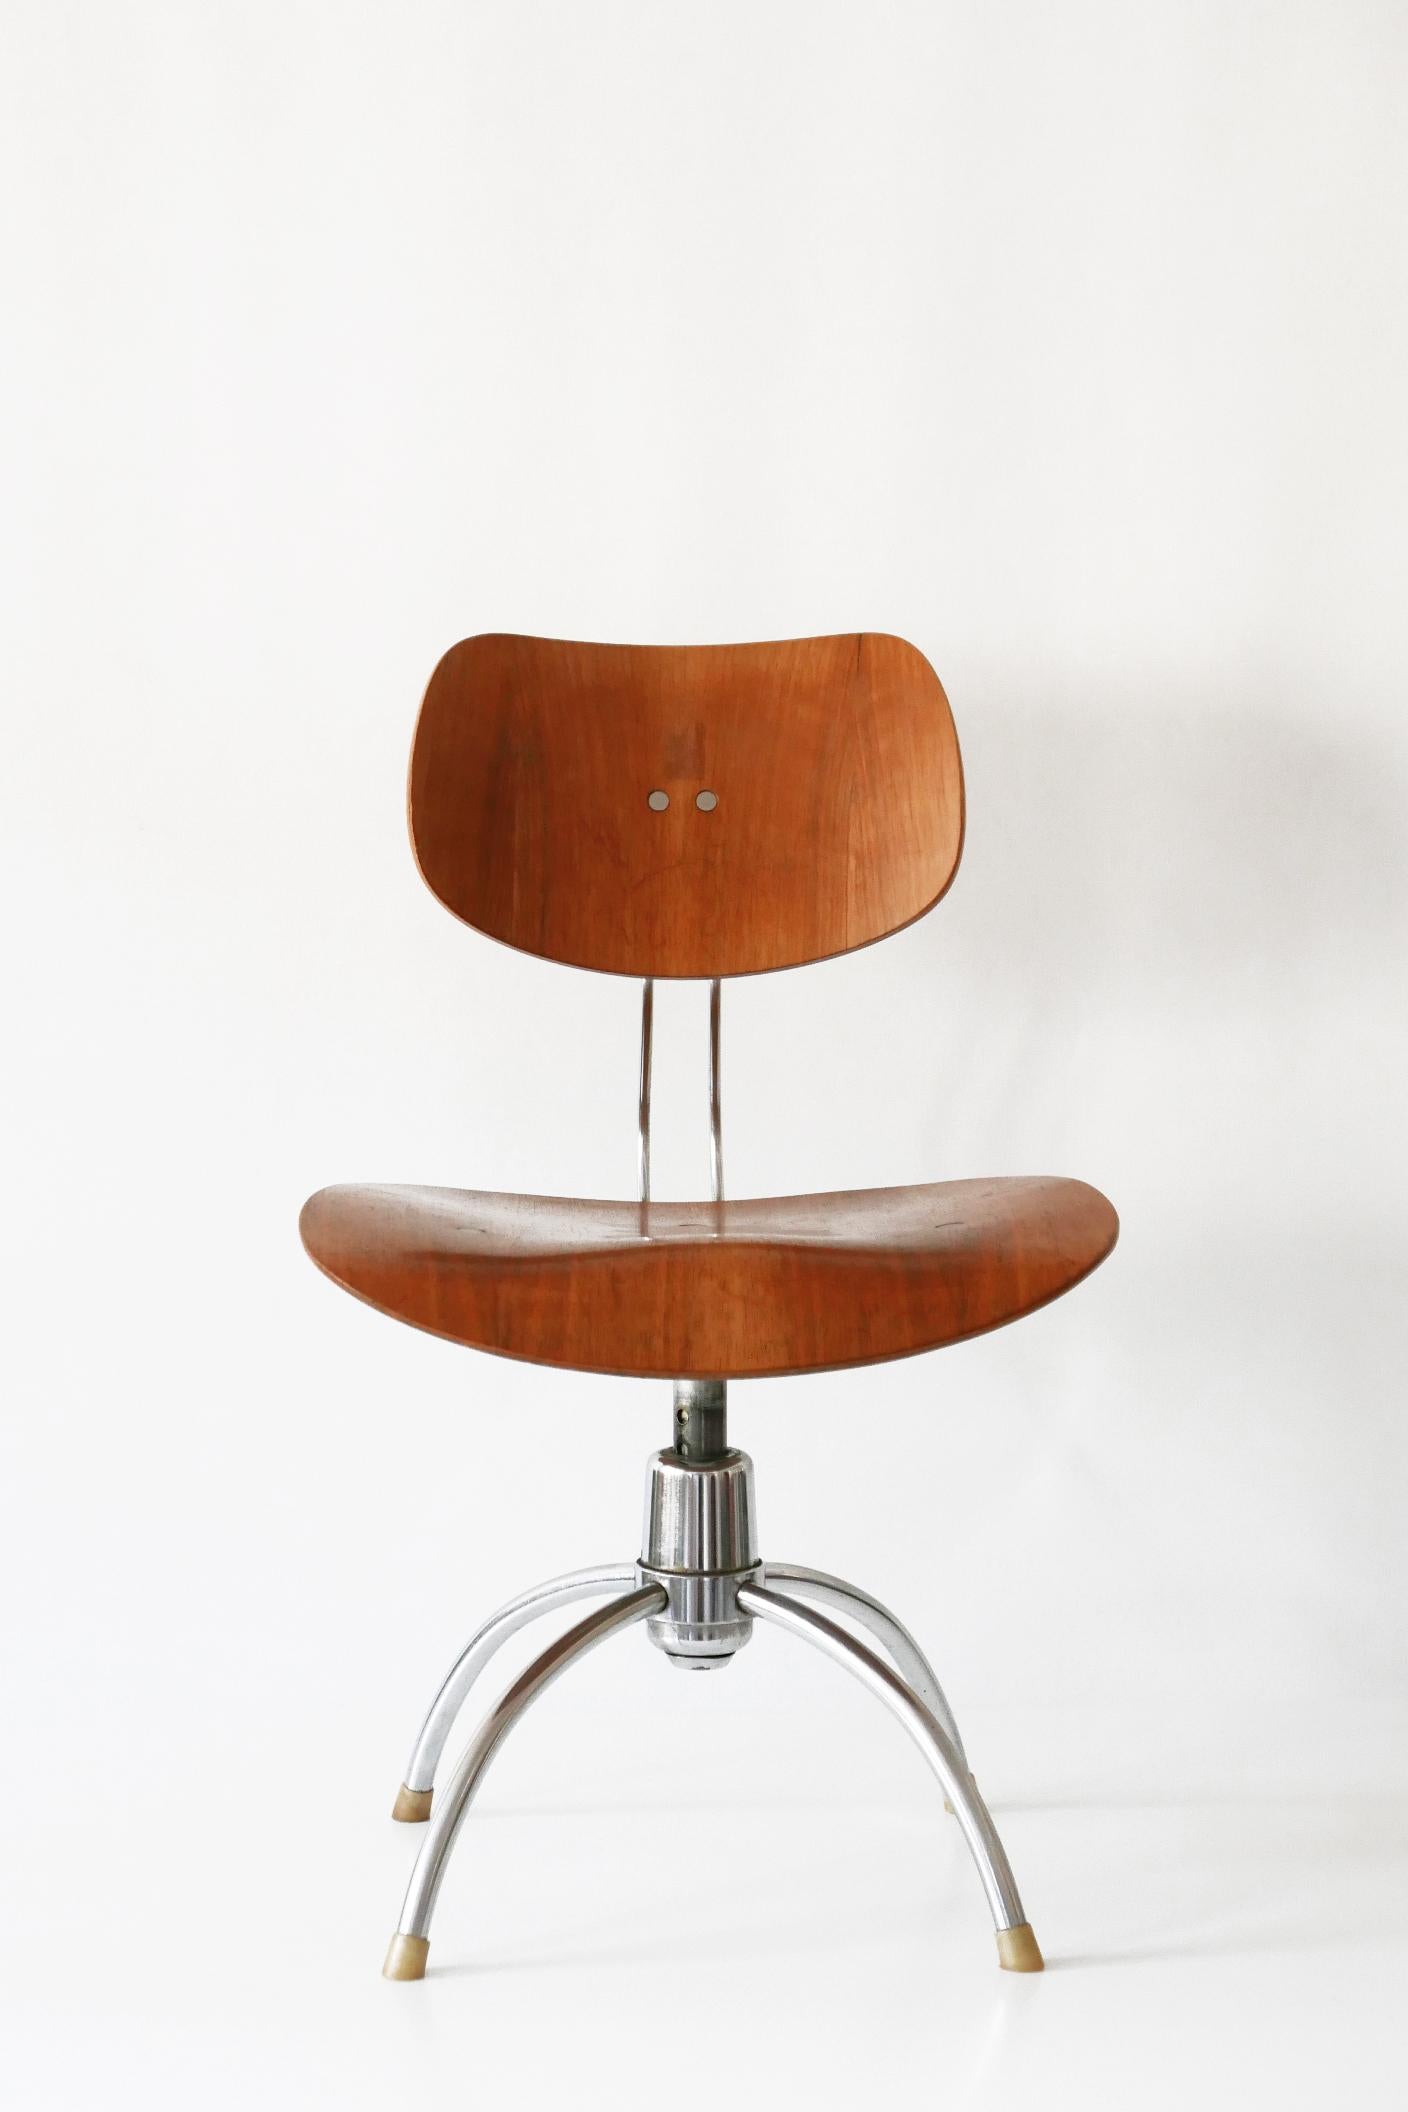 Steel Midcentury Spring Swivel Office Chair SE 40 by Egon Eiermann for Wilde + Spieth